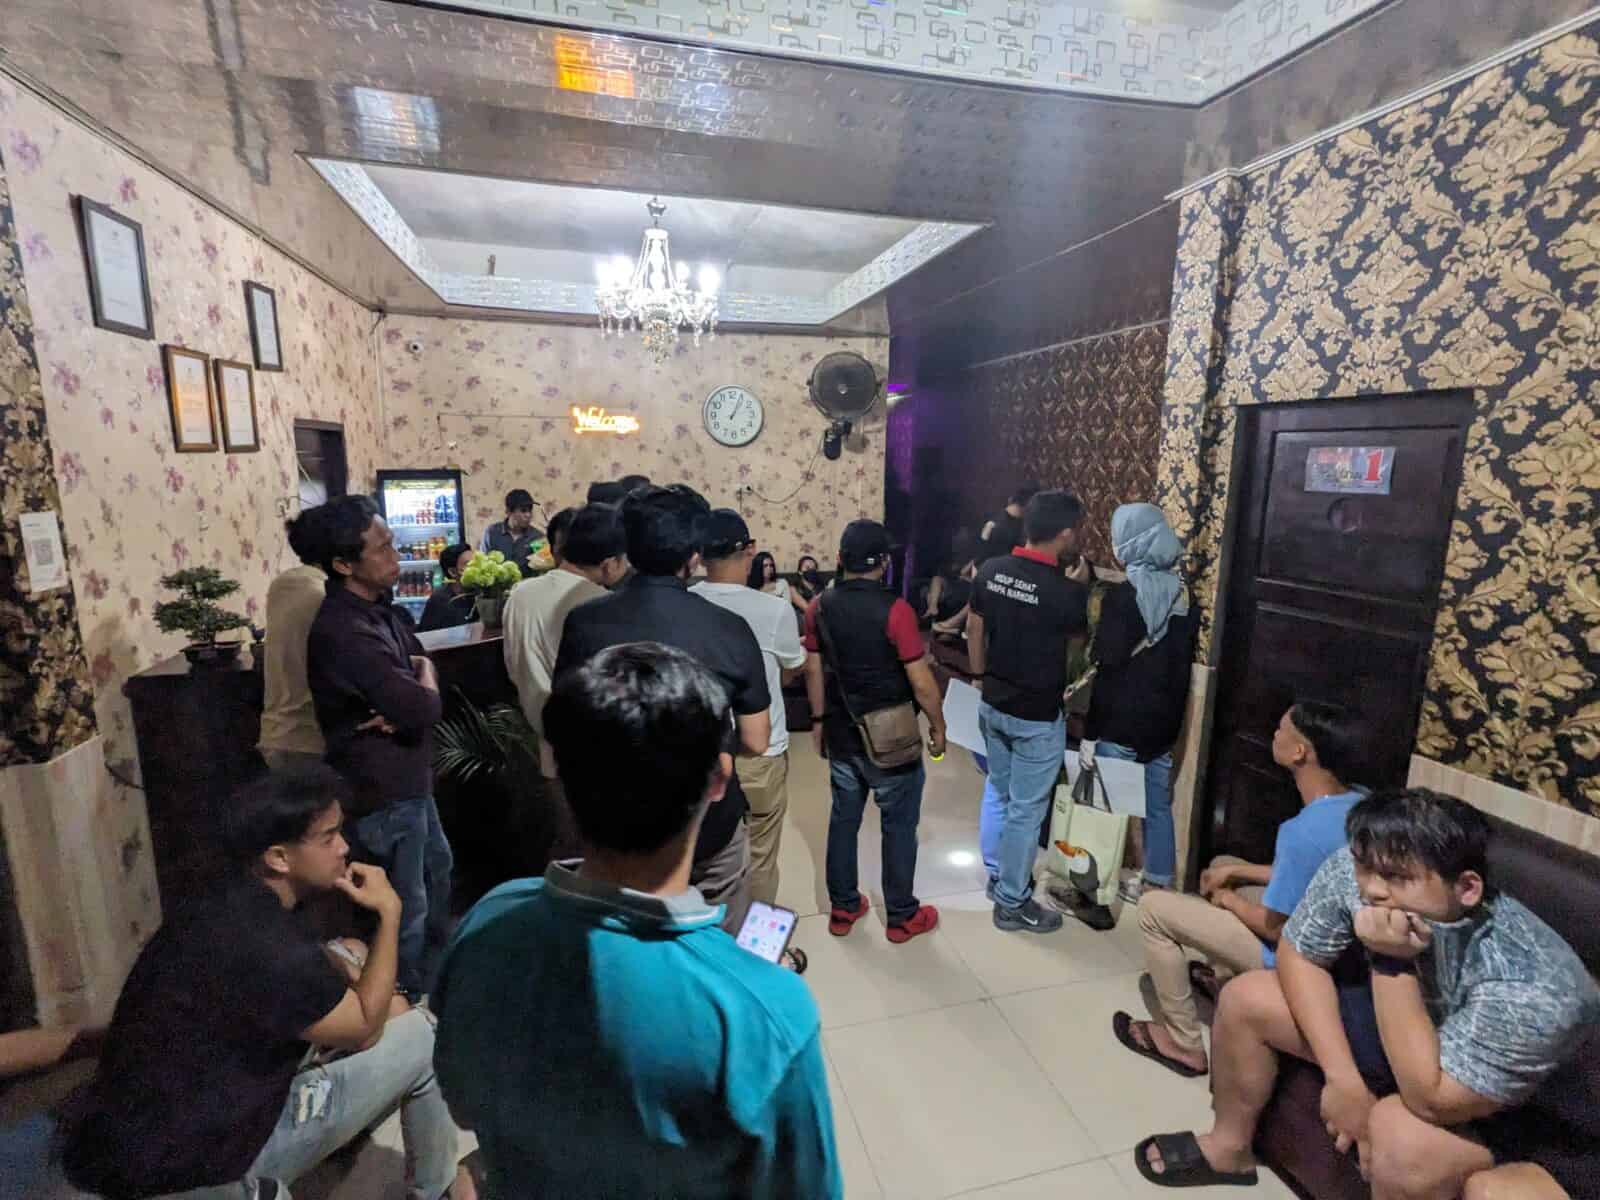 kegiatan Razia dan Tes Urine di tempat-tempat hiburan/ karaoke/kost-kostan/penginapan di wilayah hukum Kabupaten Bengkulu Selatan